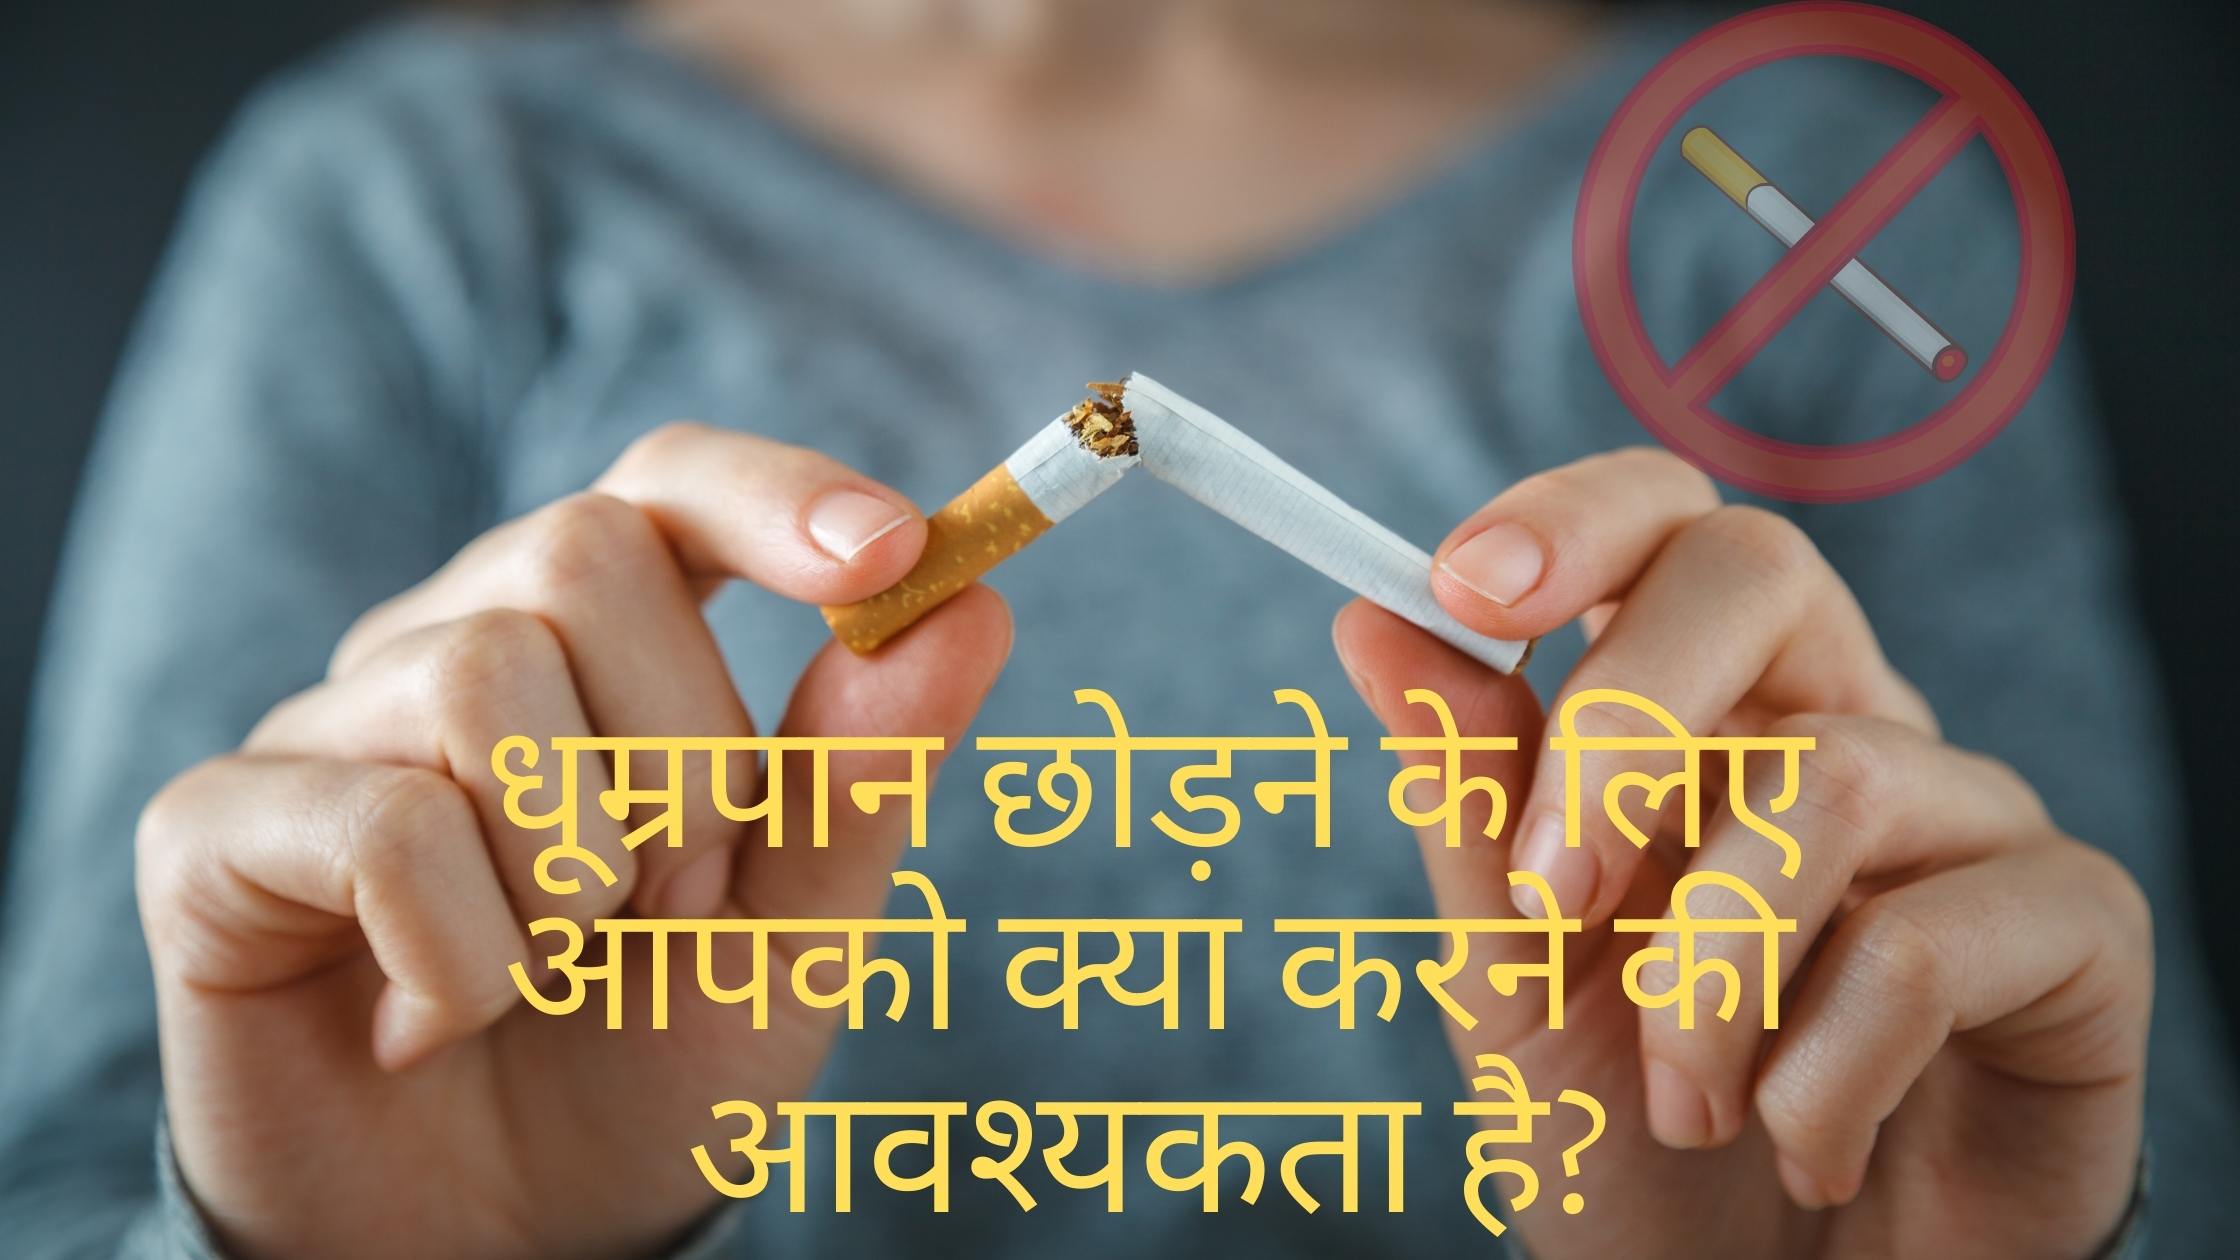 धूम्रपान छोड़ने के लिए आपको क्या करने की आवश्यकता है